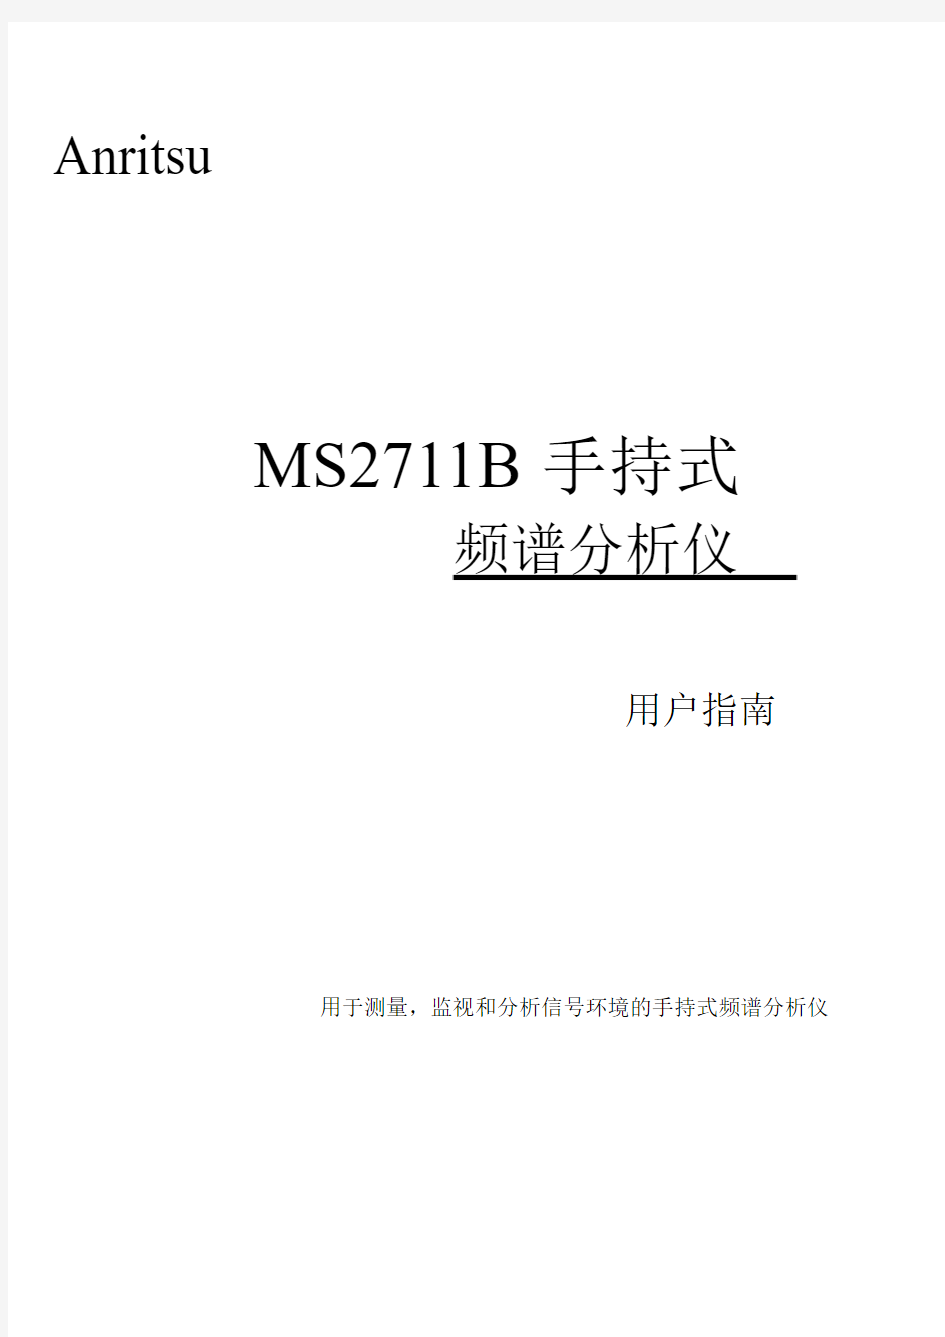 Anritsu MS2711B 手持式频谱分析仪用户指南